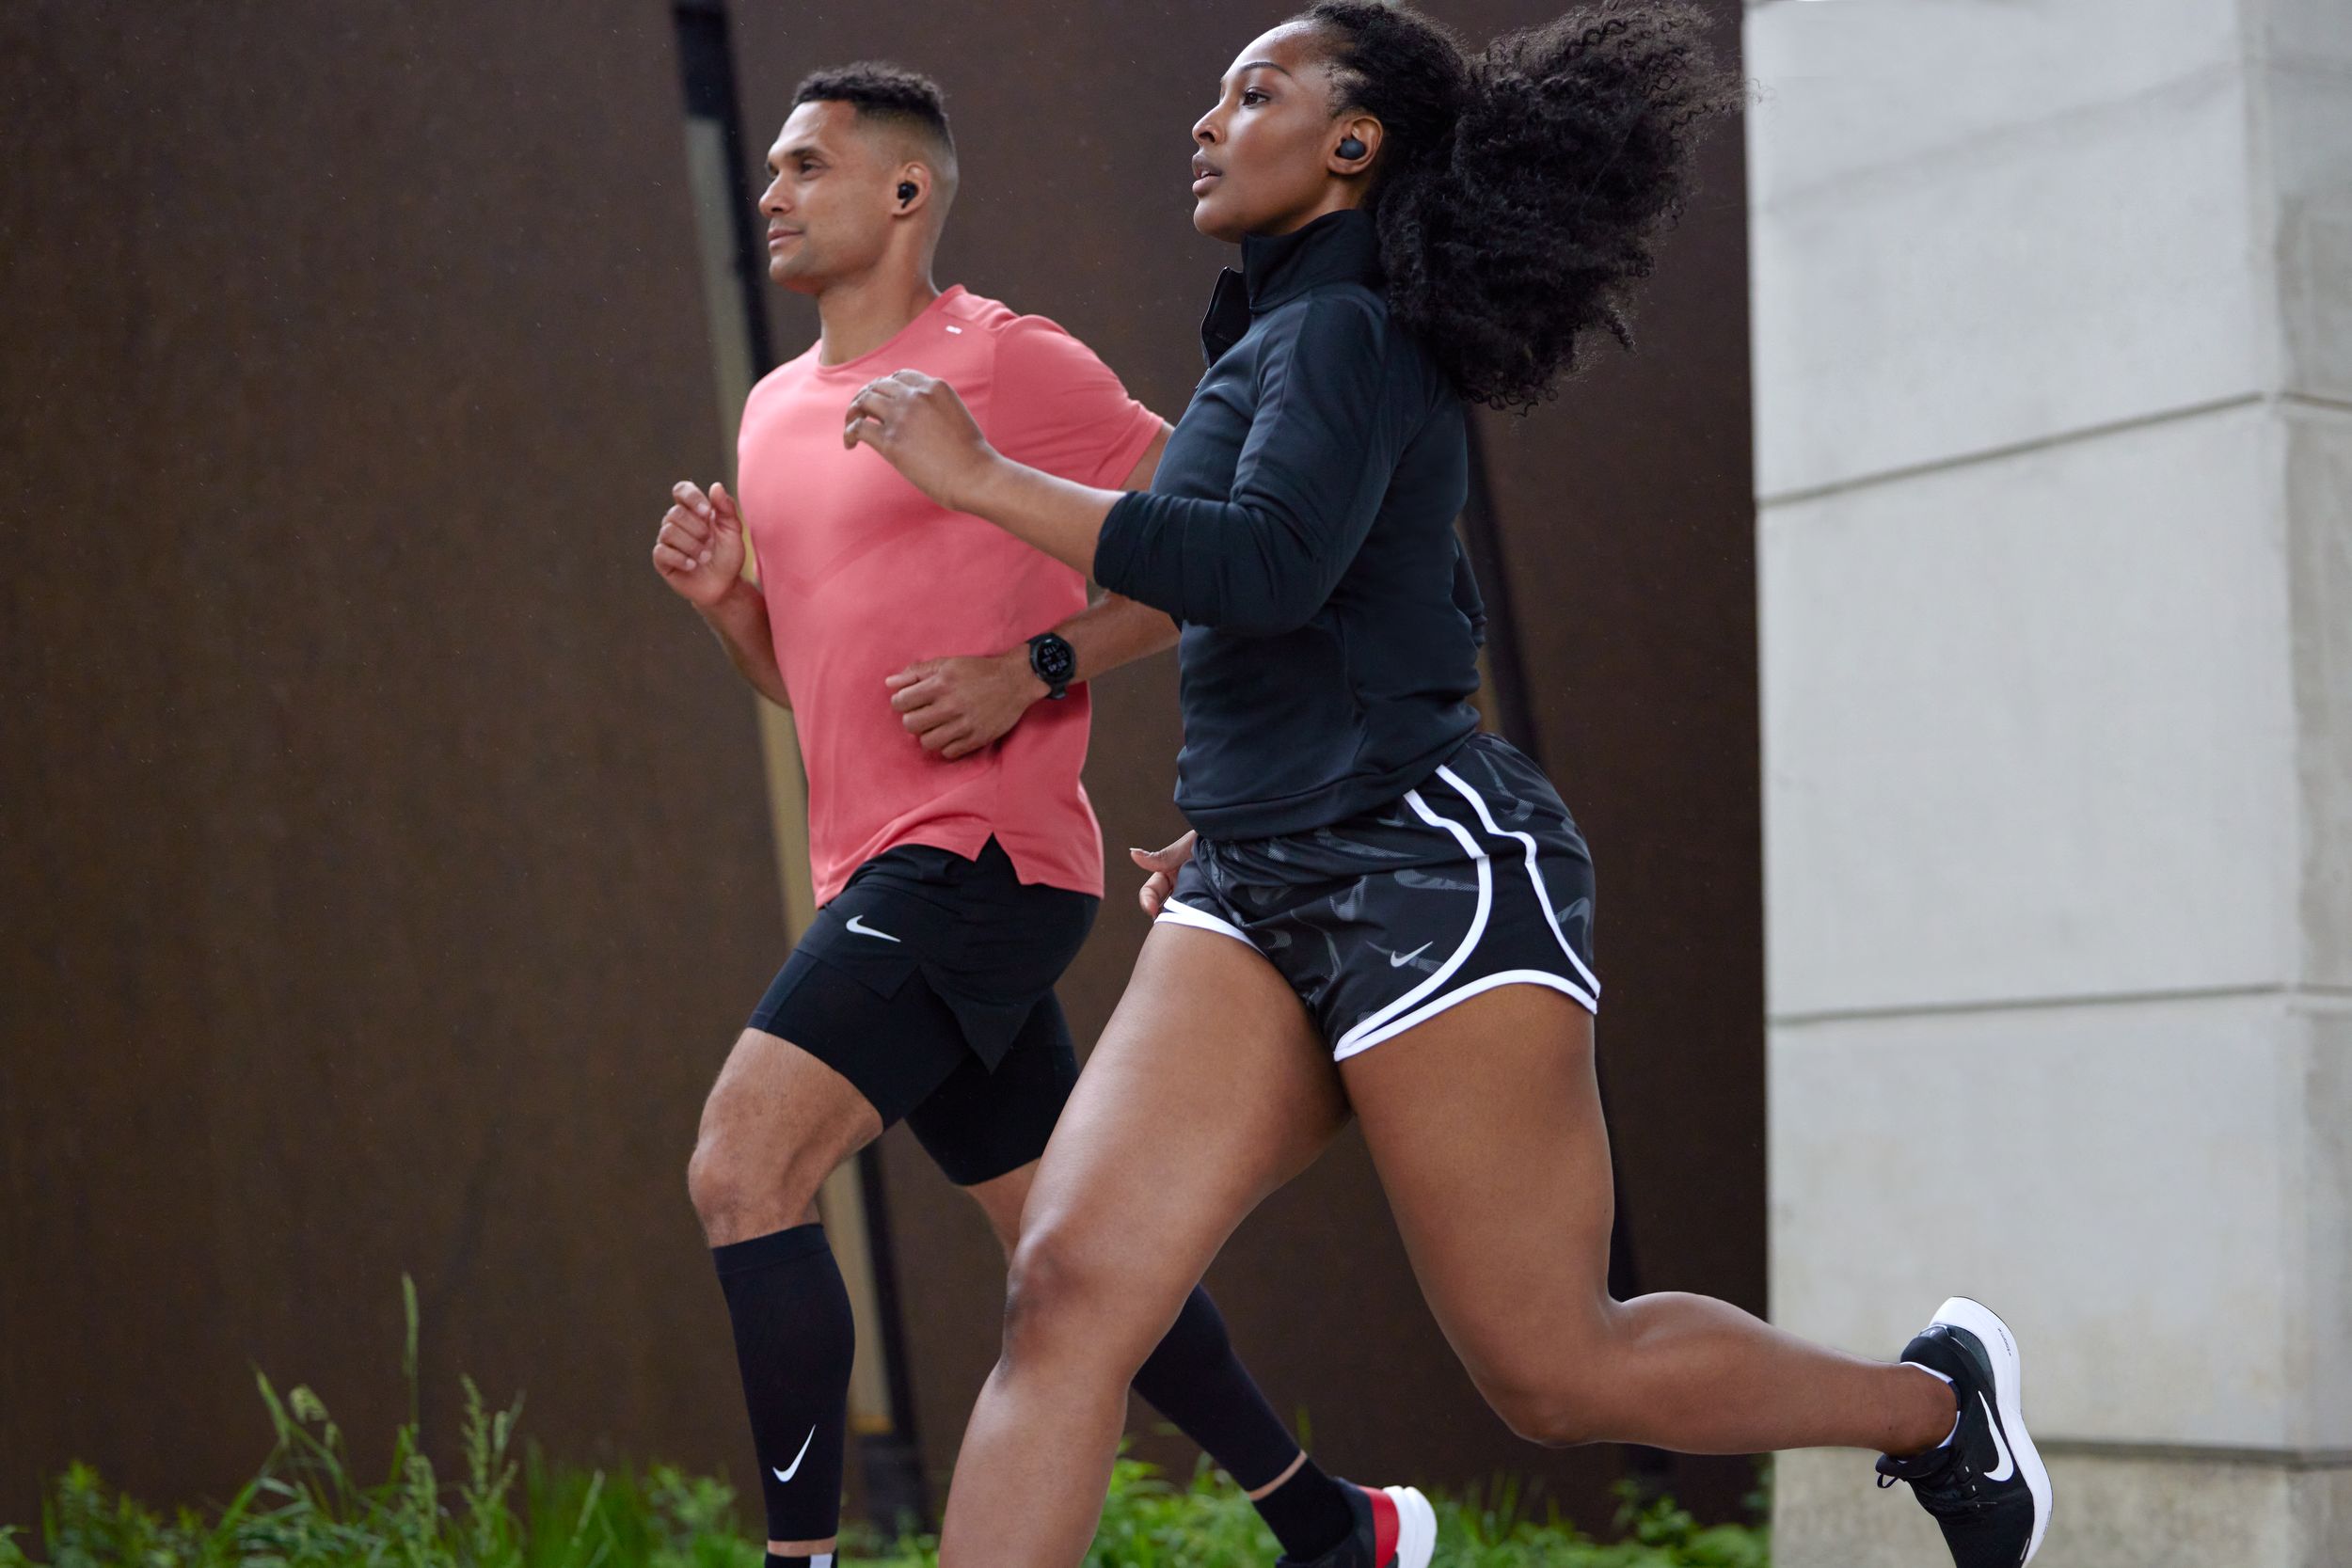 Nike Strike Leg Sleeve, Sports & Outdoors -  Canada